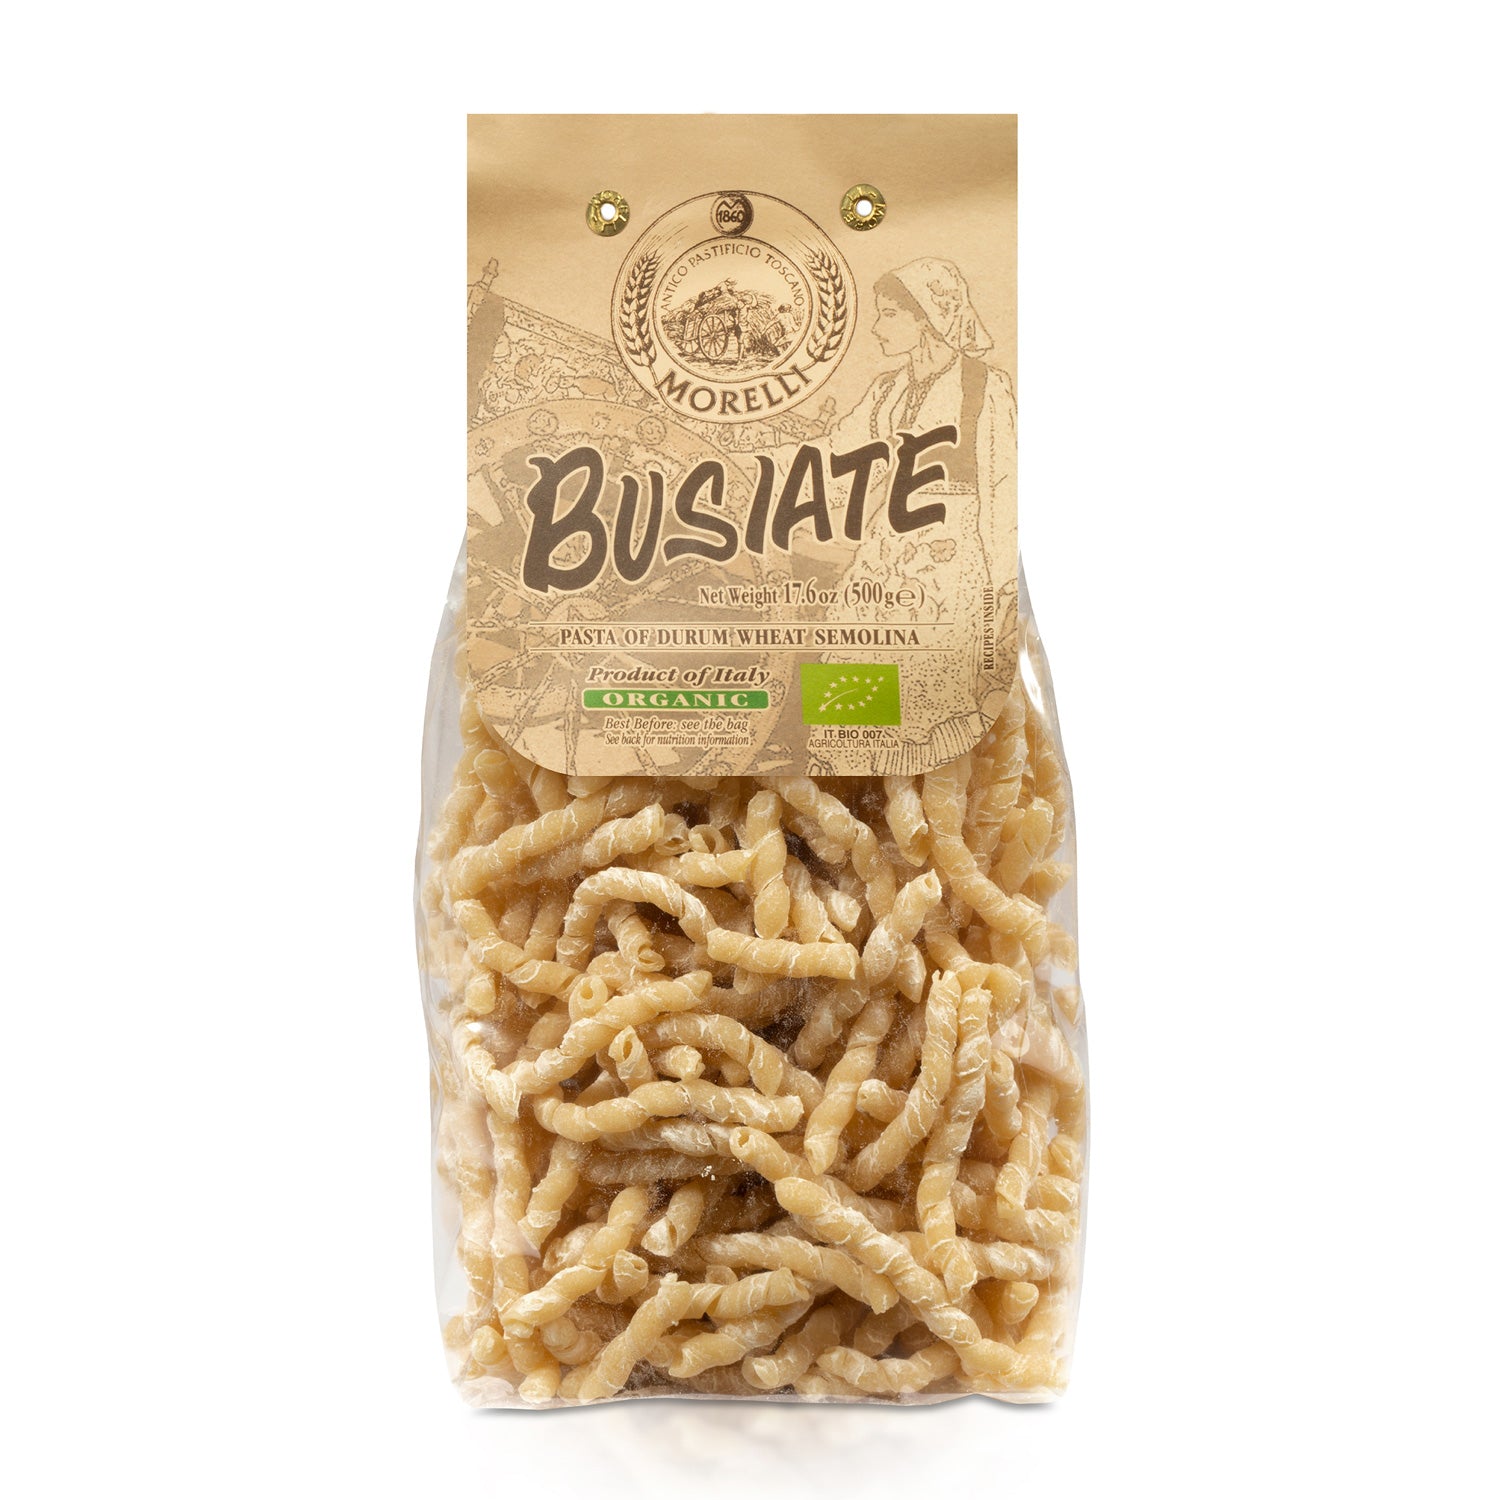 Premium Organic Spiral Pasta by Morelli - Busiate